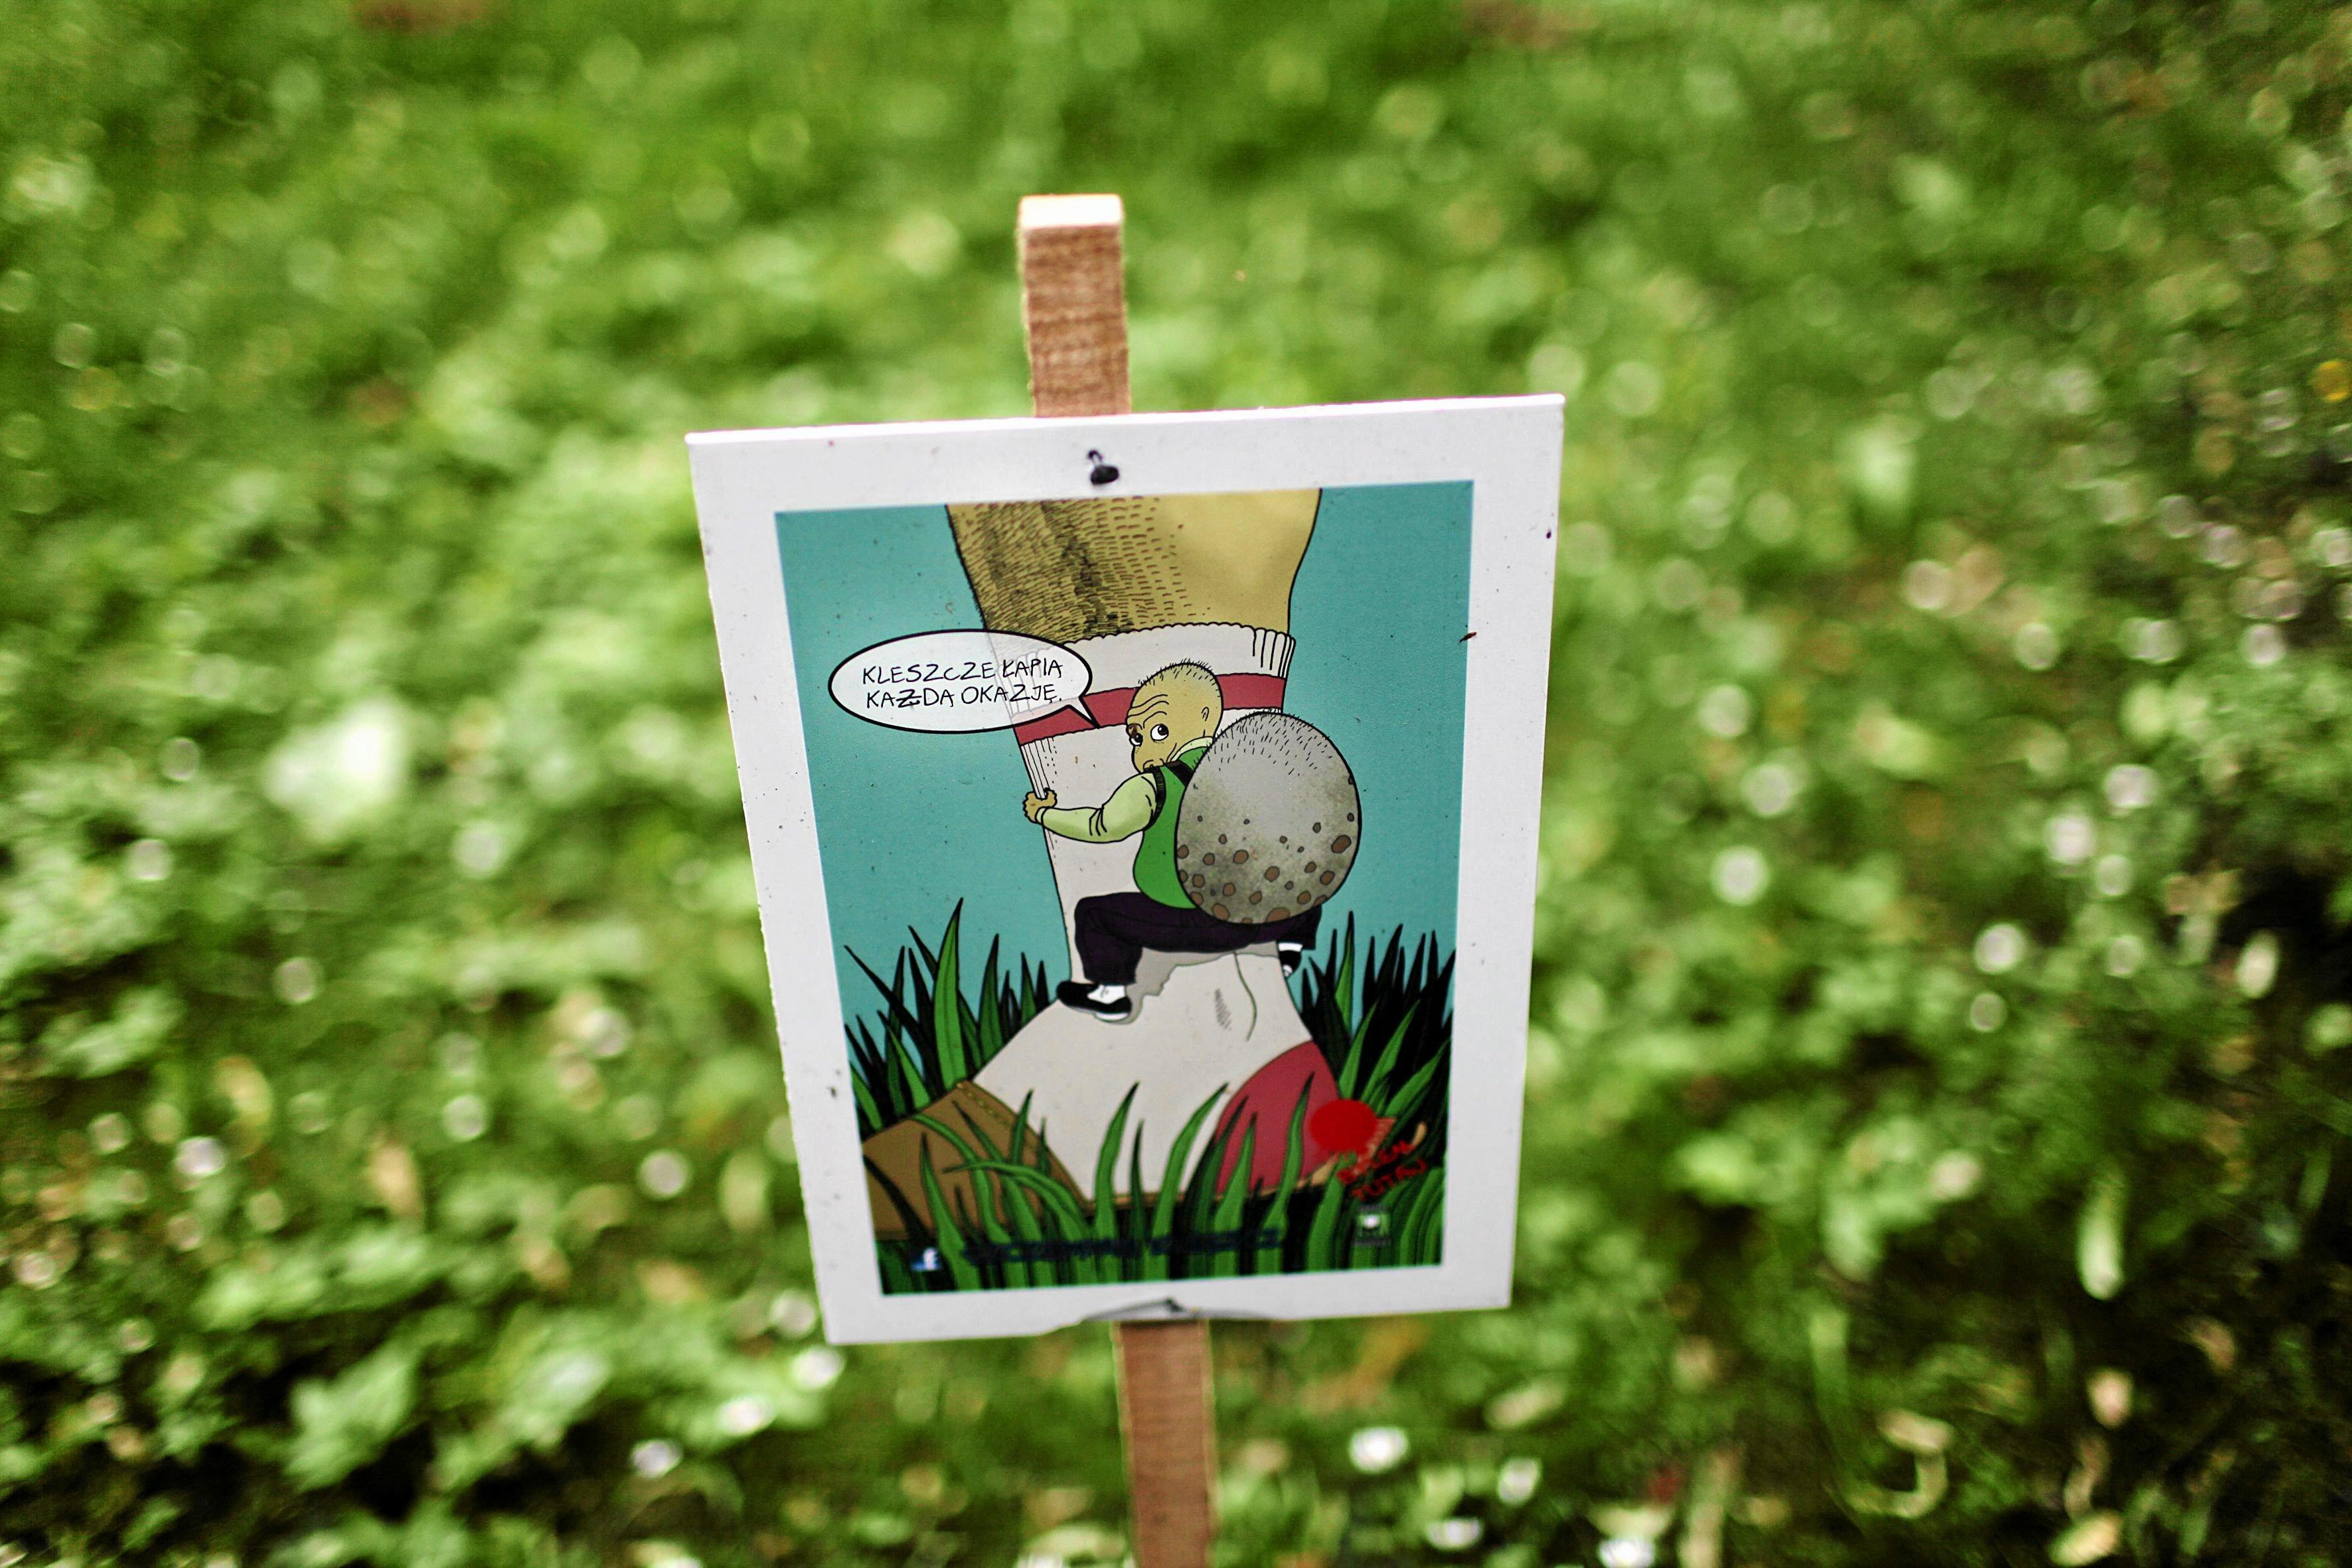 rysunek na tabliczce wbitej w trawnik przedstawiający zantropomorfizowanego kleszcza wspinającego się po ludzkiej nodze